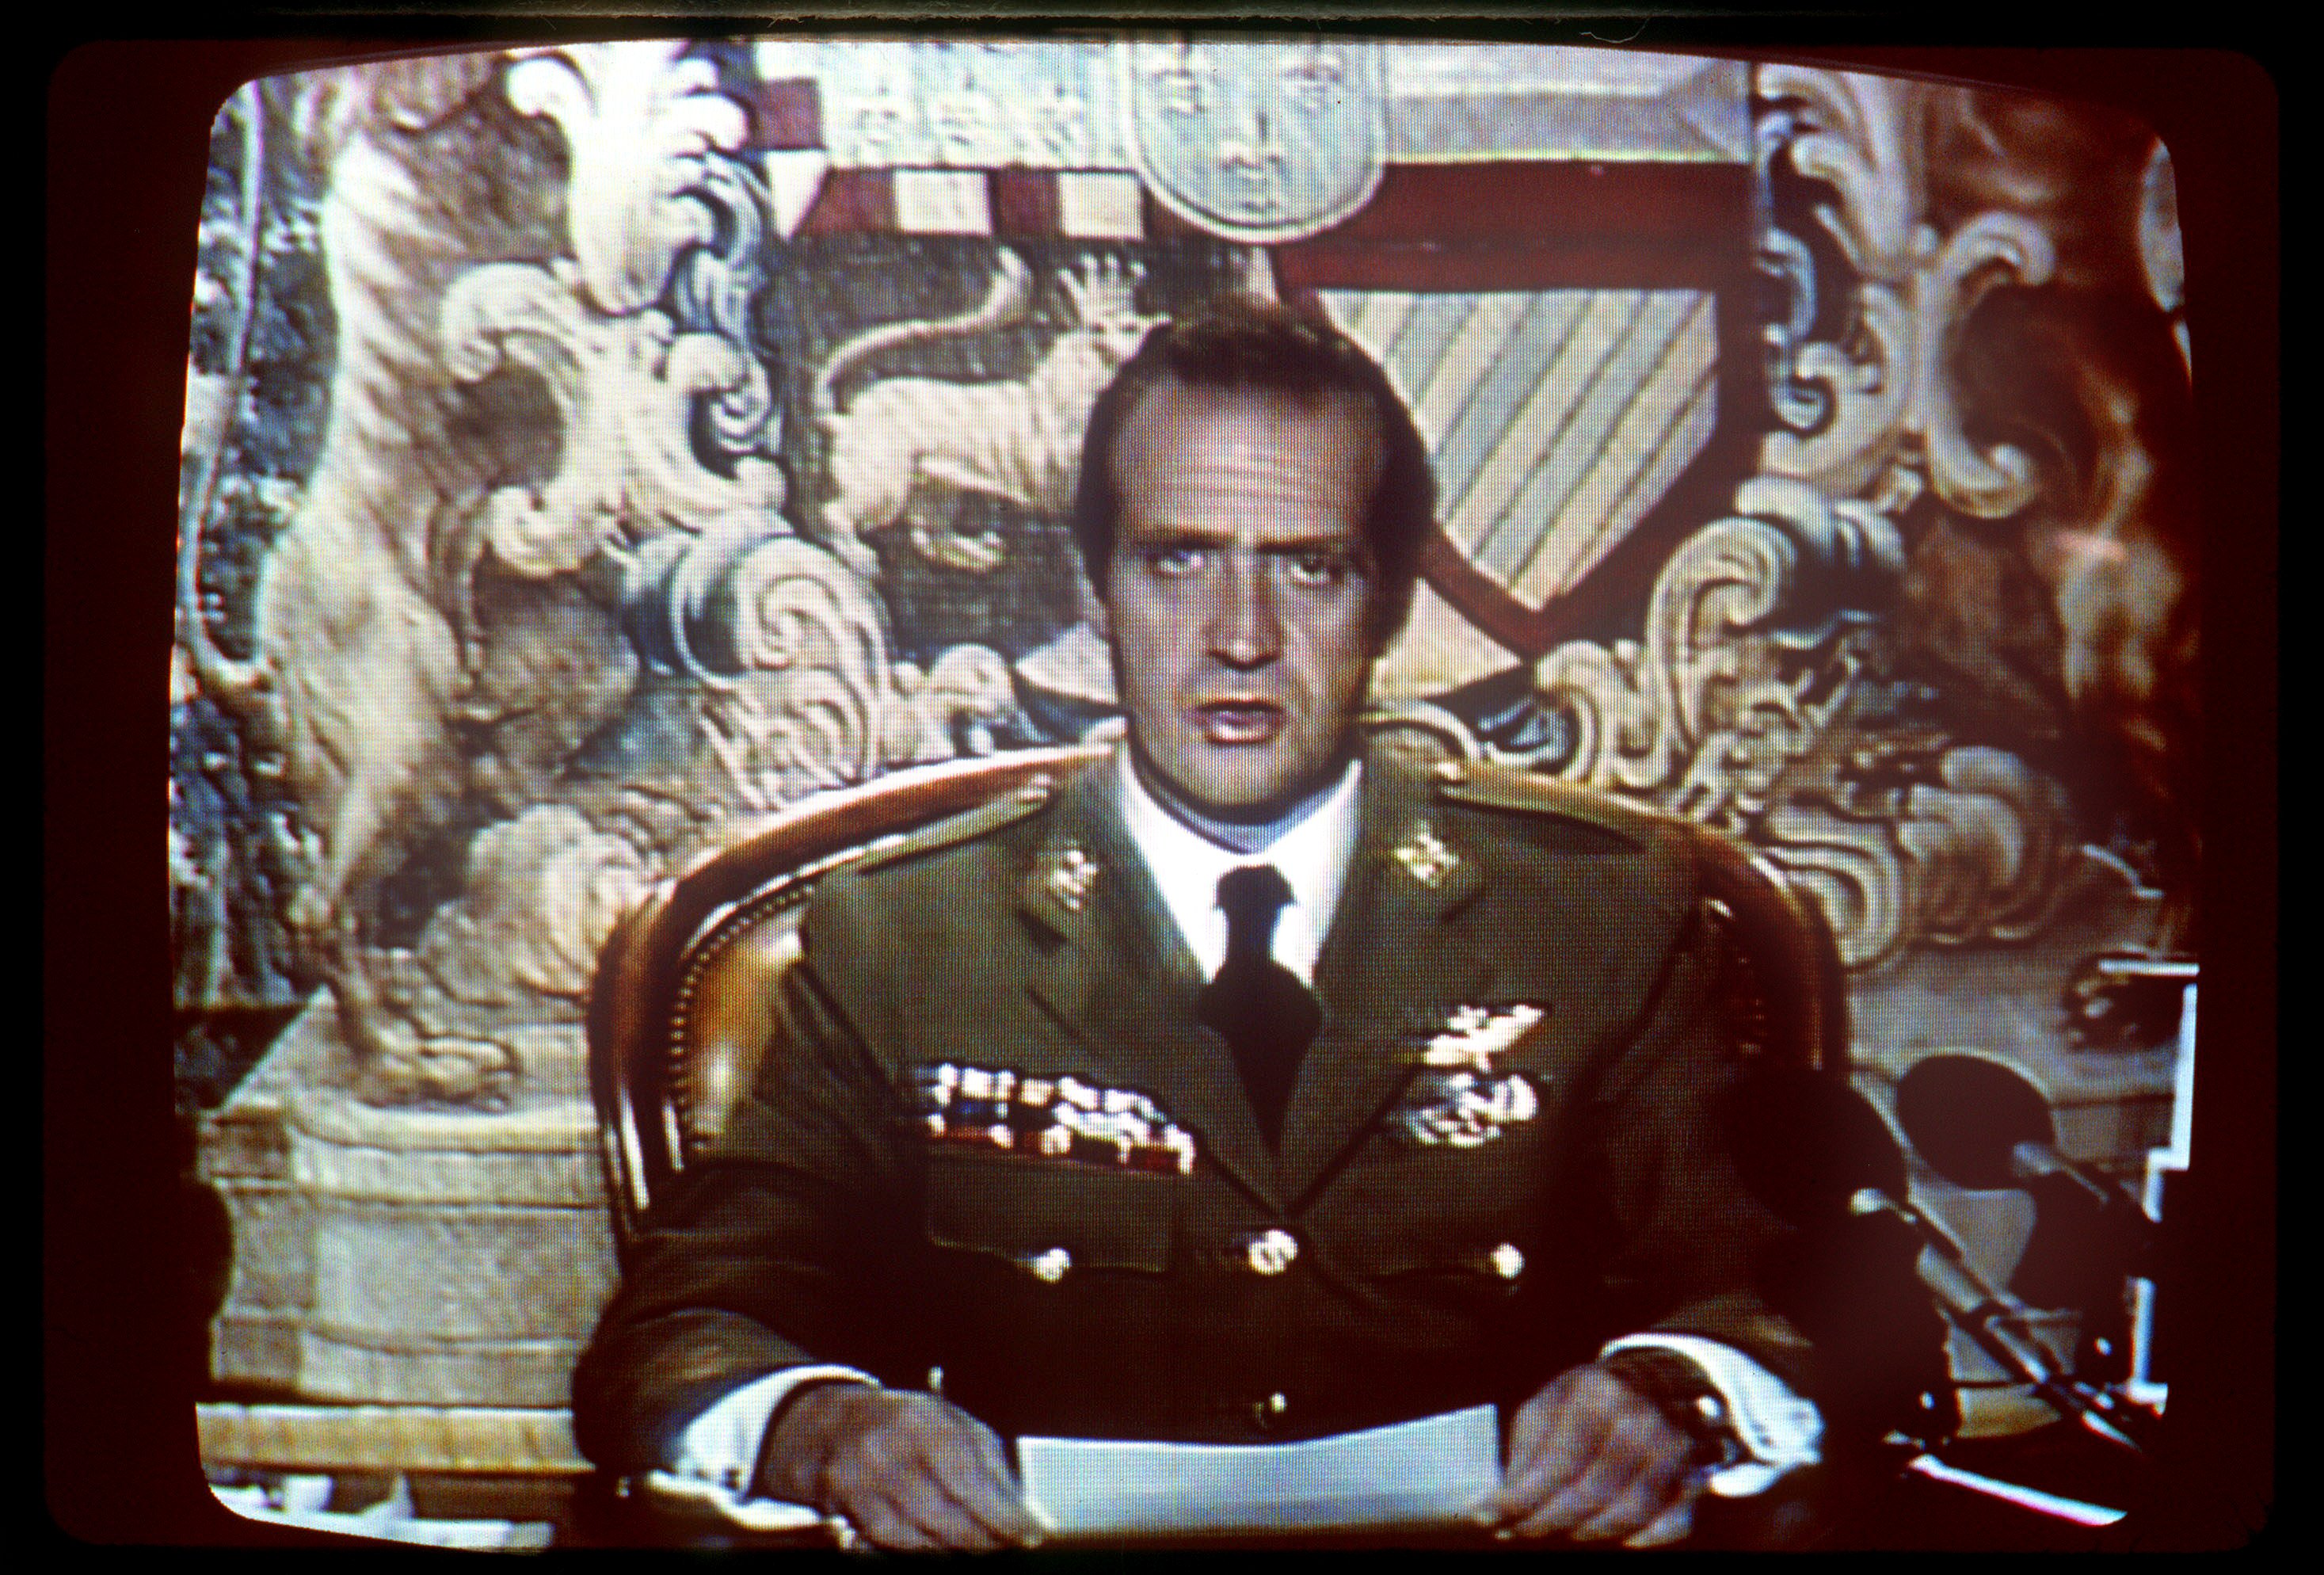 Valiente TV vasca, un documental hunde a Juan Carlos: "El rey montó el 23-F"